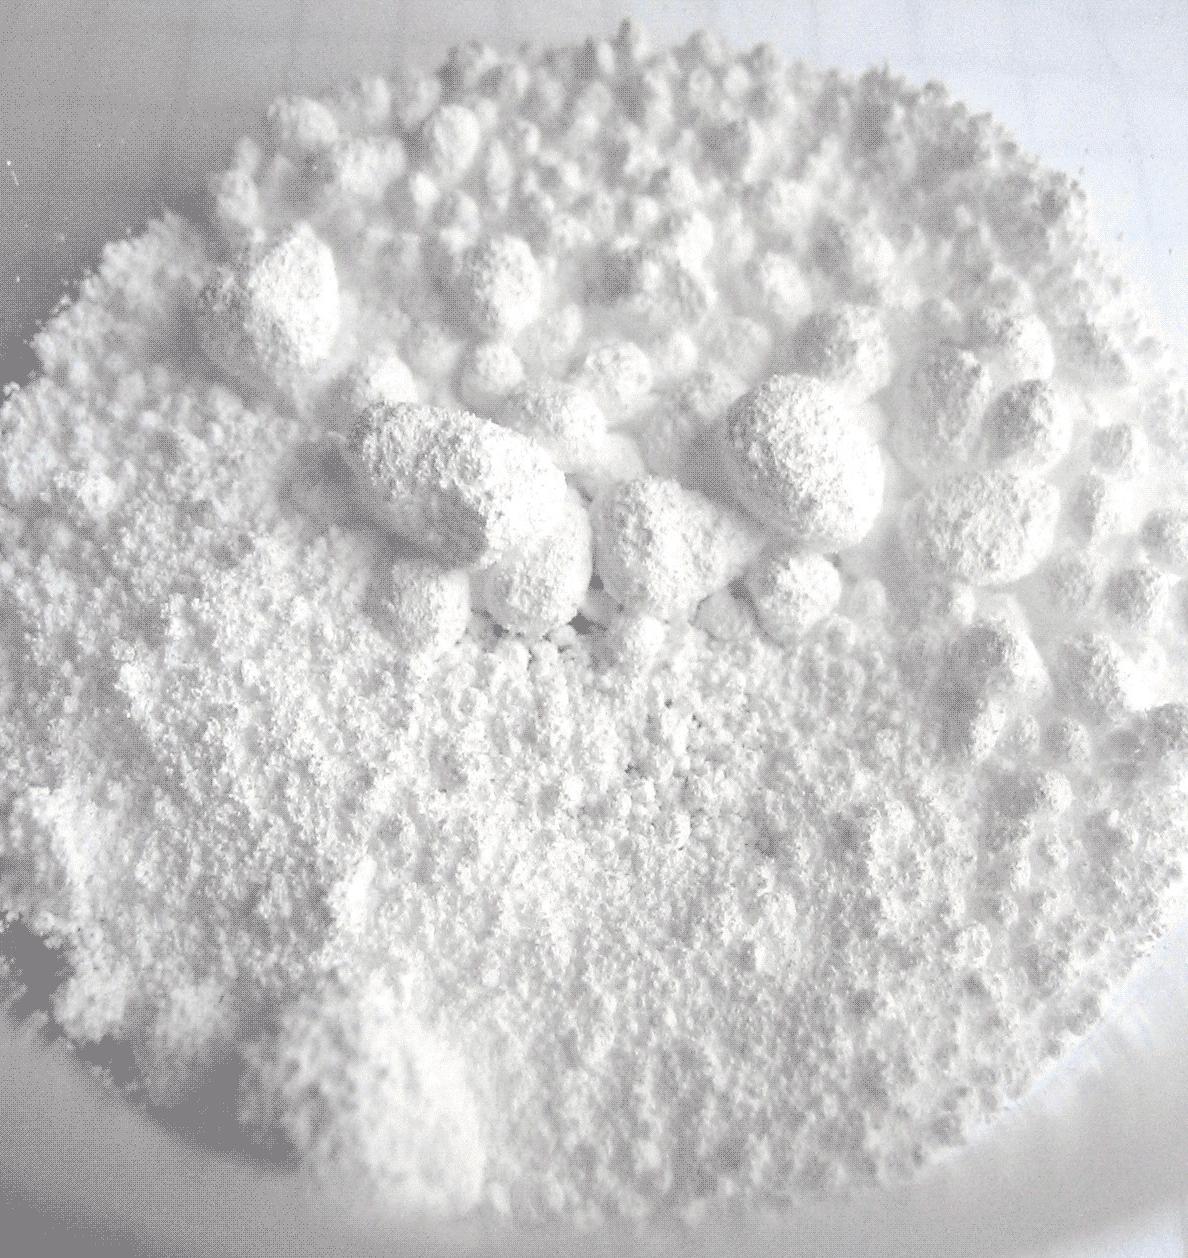 Bari sunfat - Một trong các chất có kết tủa trắng, được sử dụng chủ yếu trong y tế